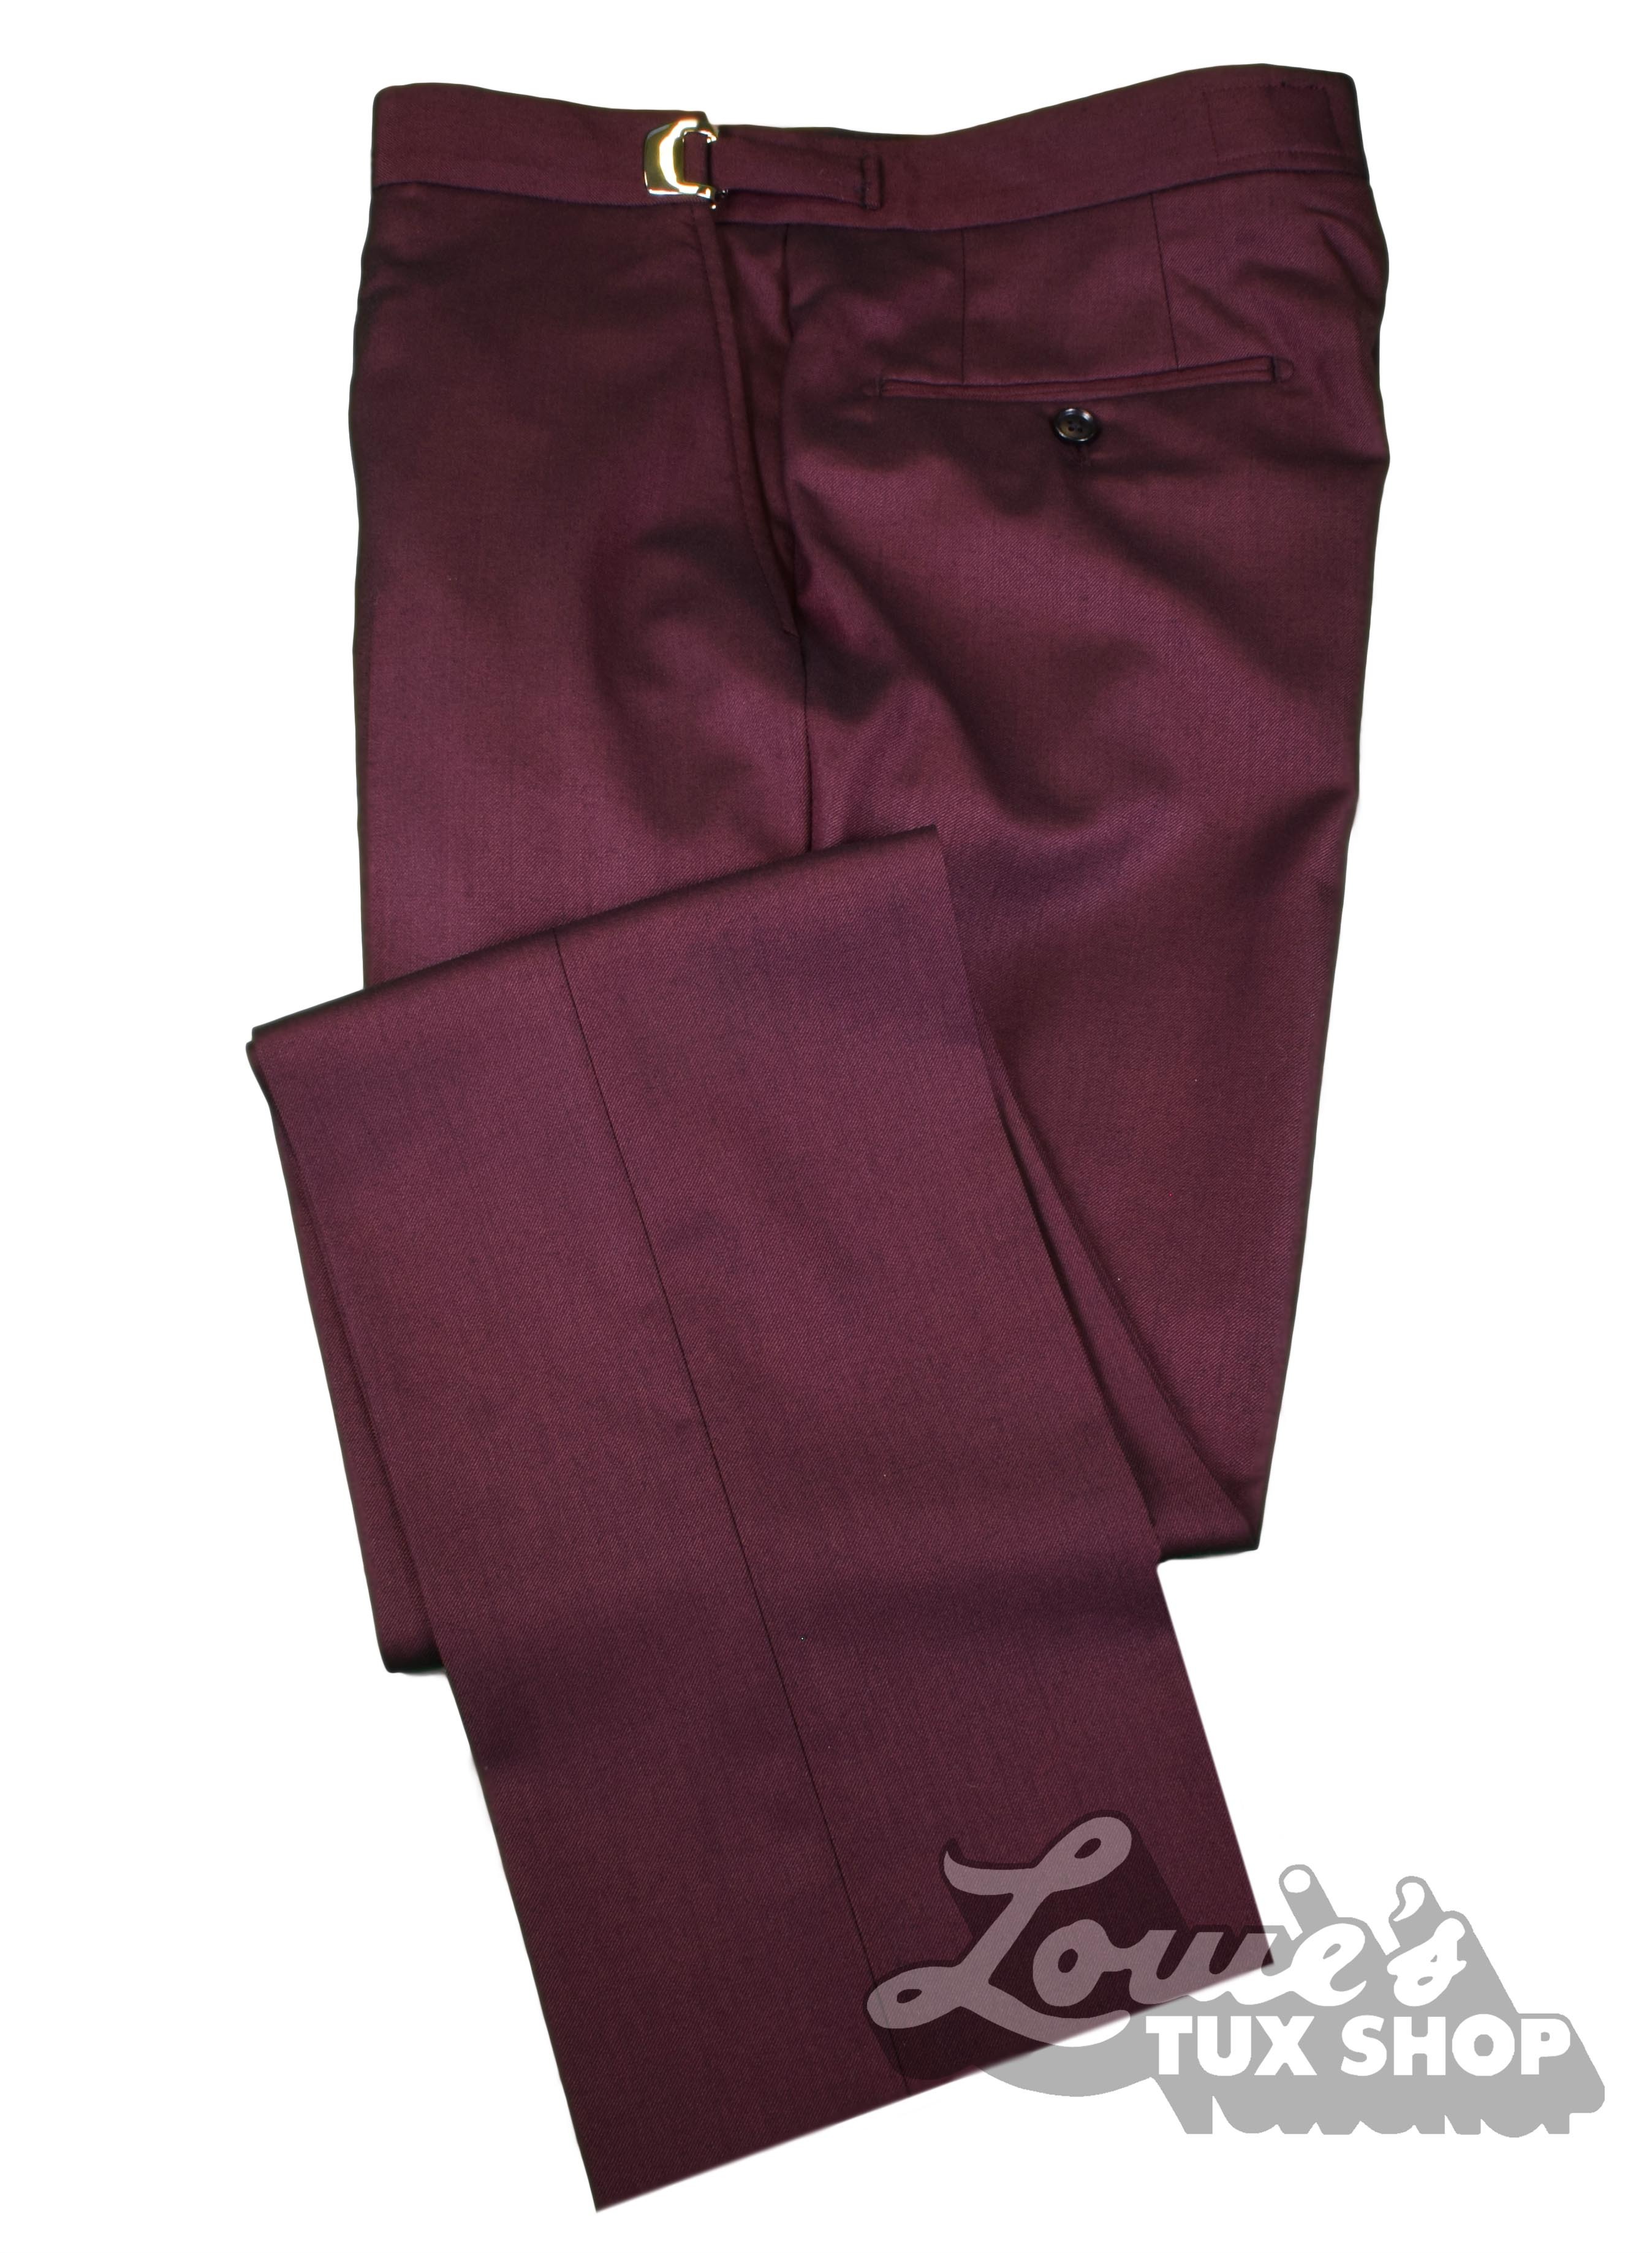 Ike Behar Burgundy Plain Front Pants | Louie's Tux Shop